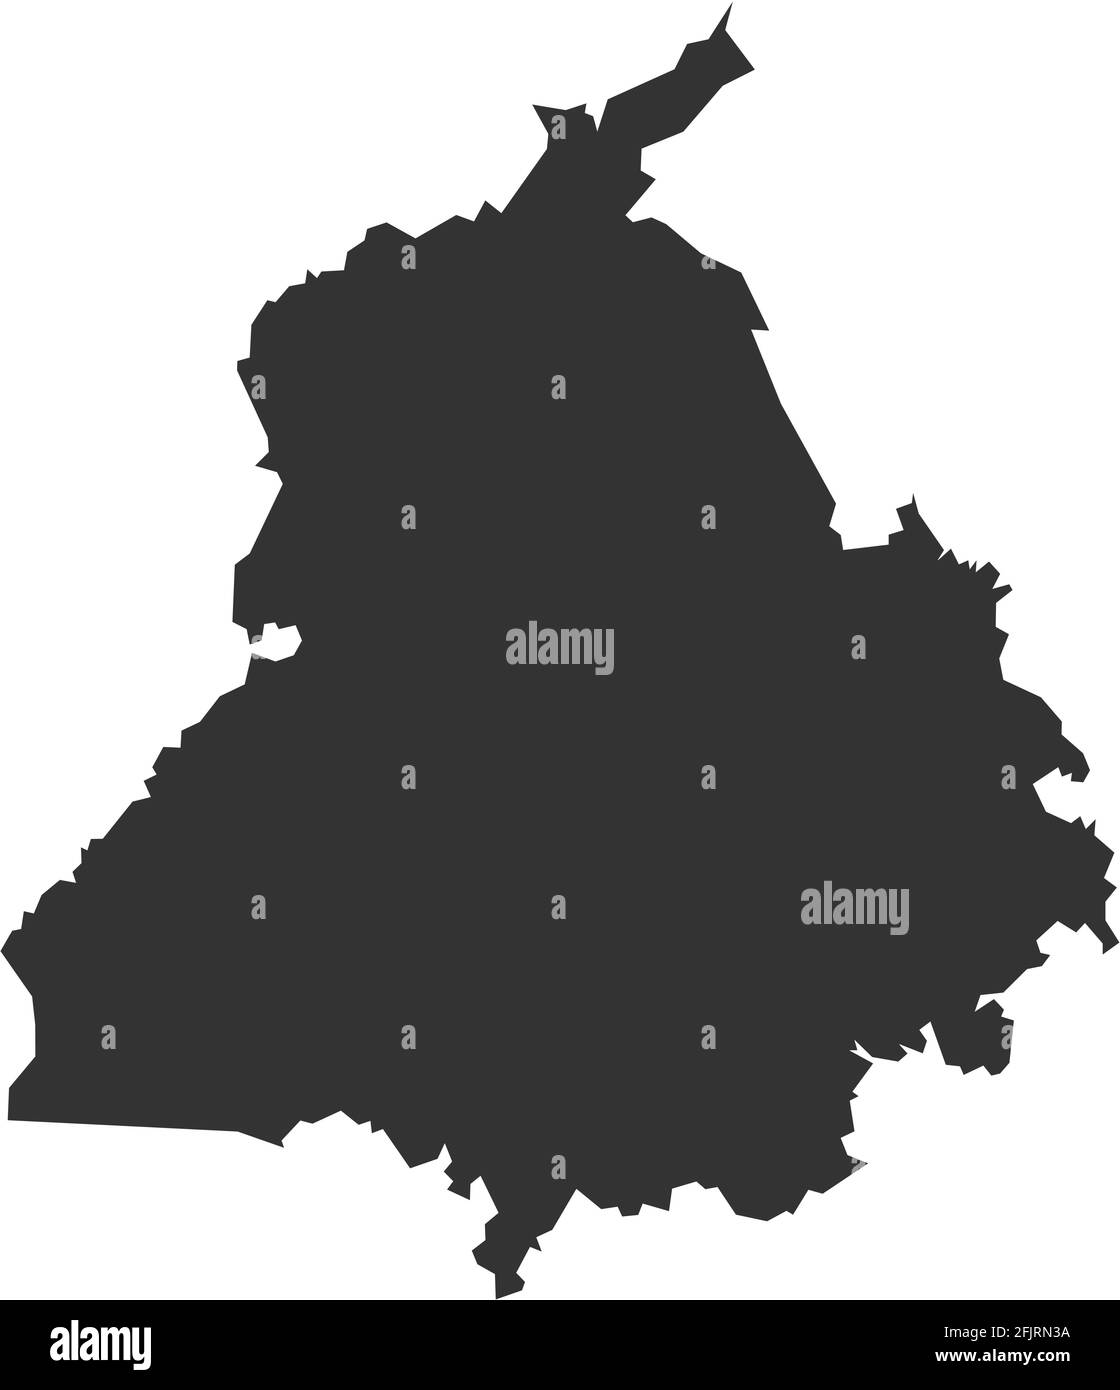 Mappa dello stato indiano del Punjab. Sfondo grigio scuro. Progettazione grafica dei concetti aziendali. Illustrazione Vettoriale